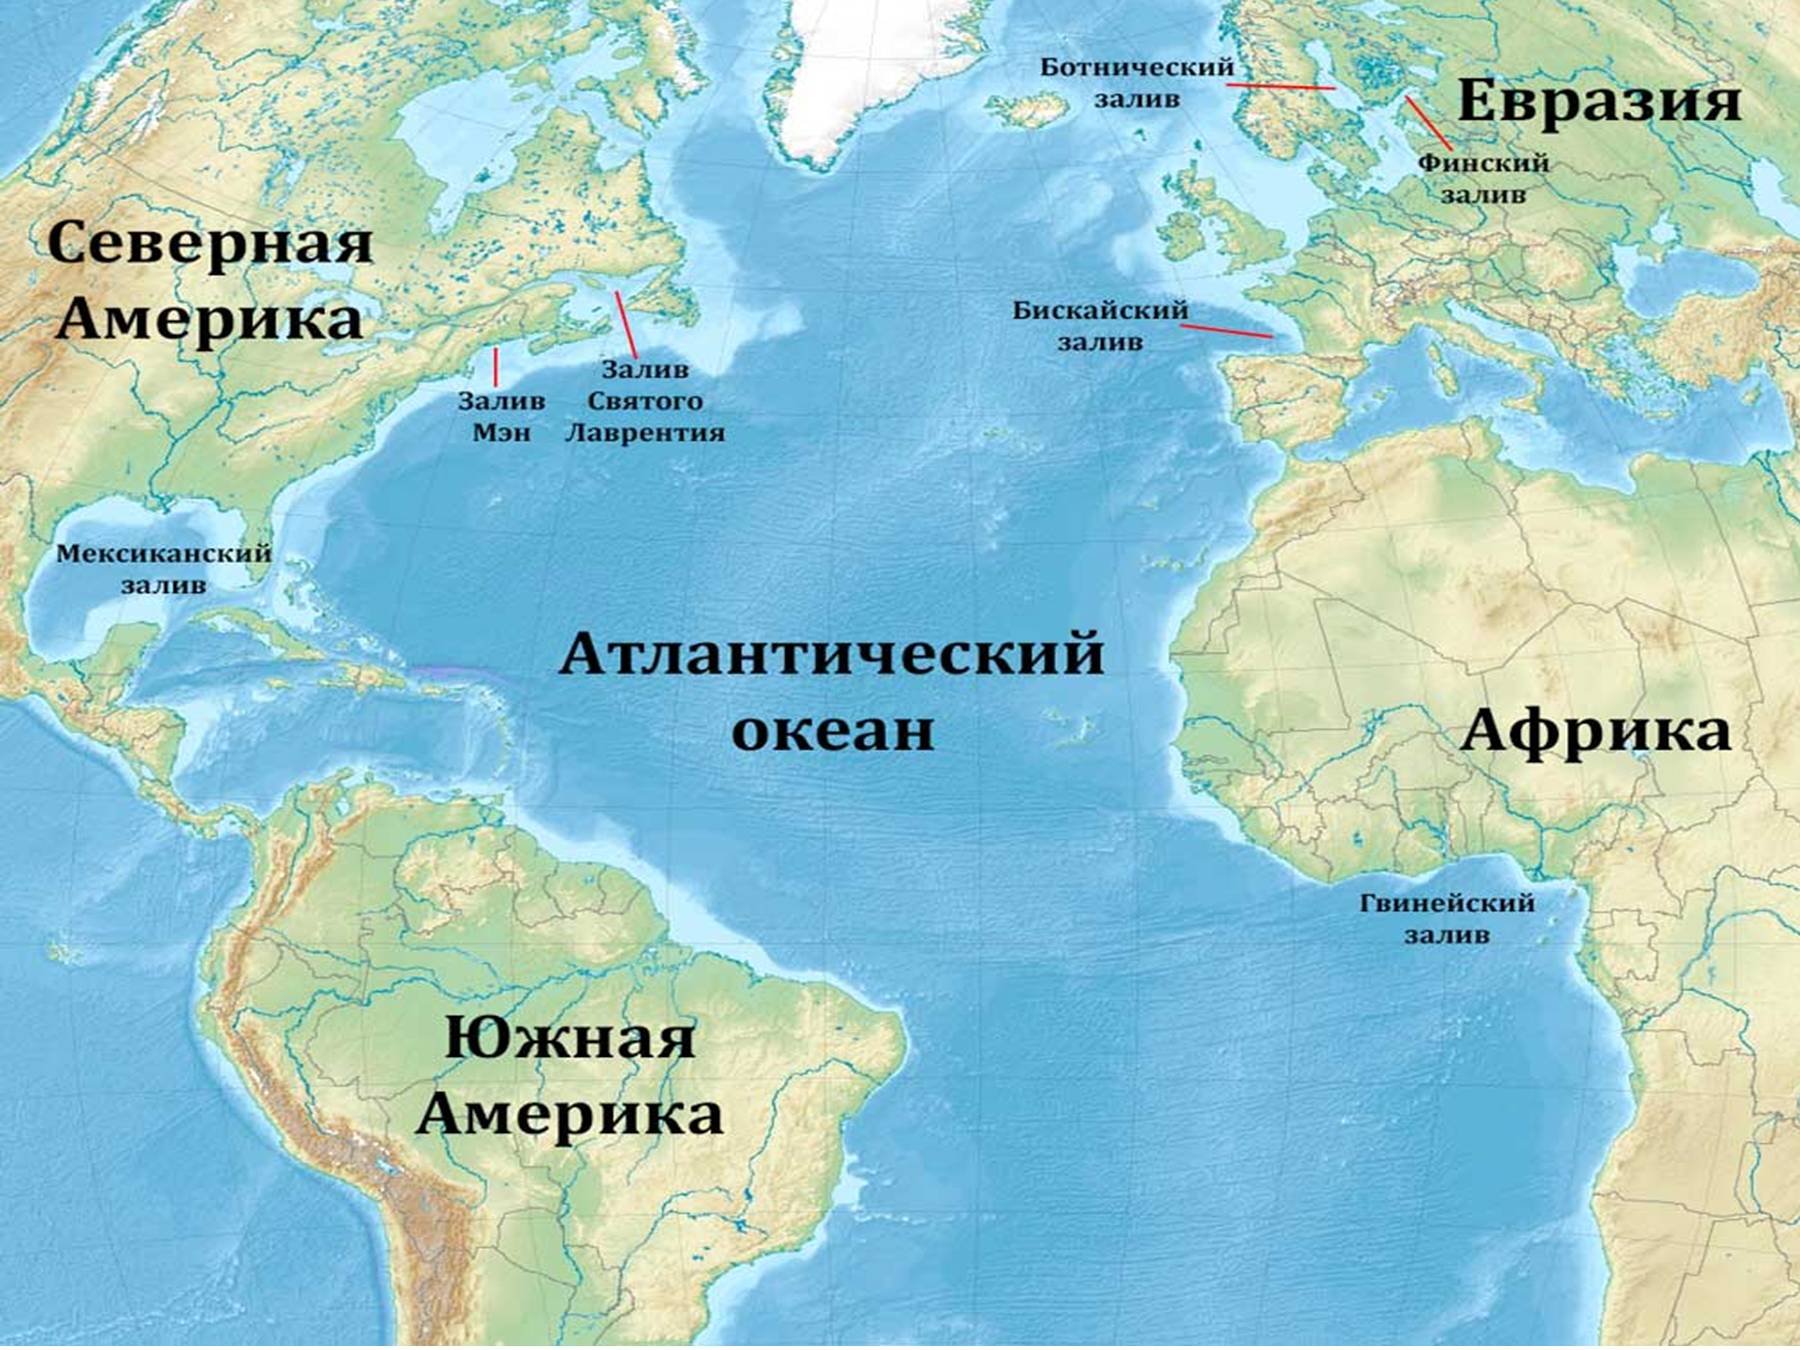 Страны входящие в океан. Расположение Атлантического океана на карте. Карта Атлантического океана с морями заливами и проливами. Атлантический океан на карте. Атлантический акеан на карте.